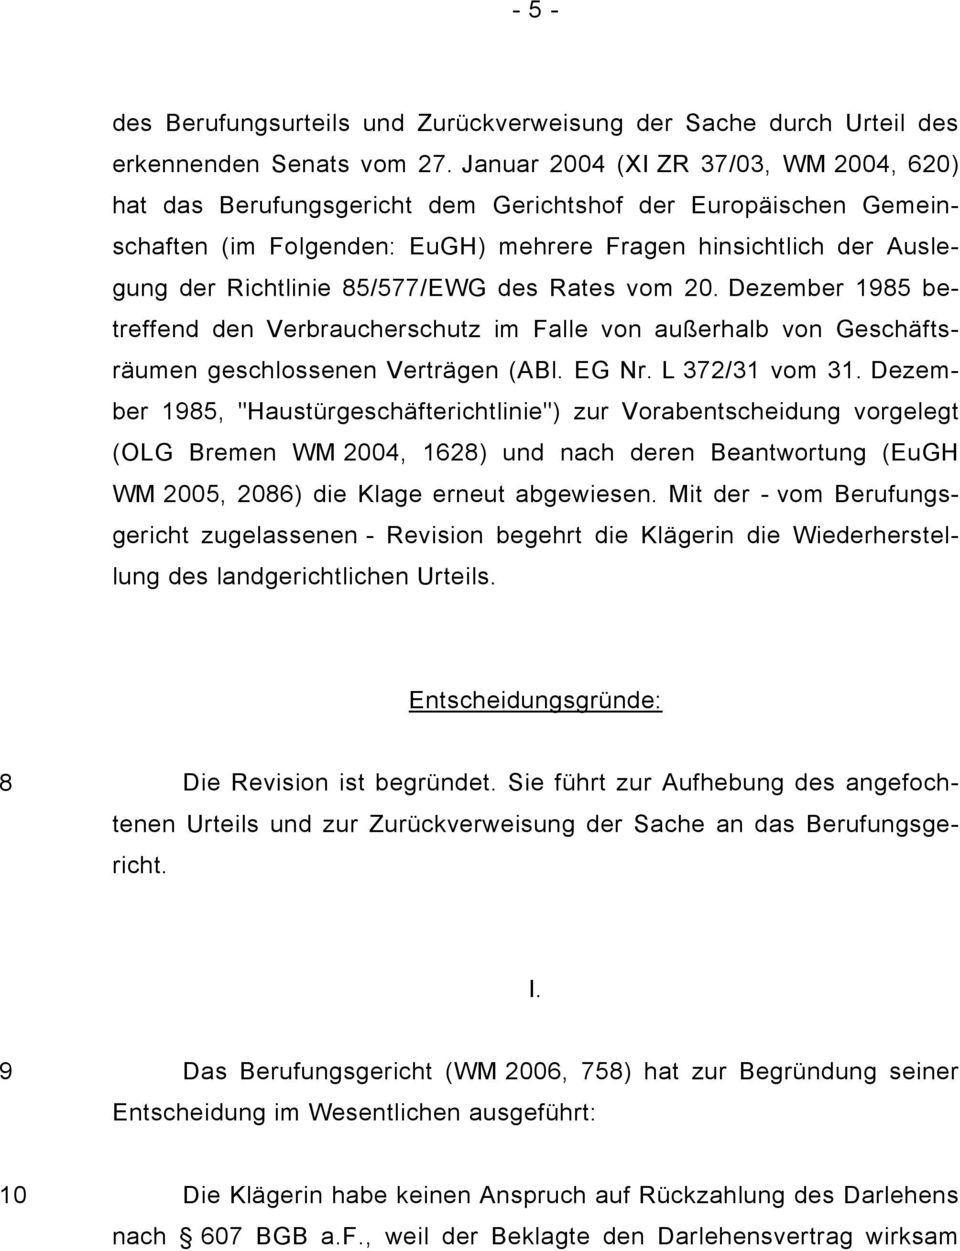 85/577/EWG des Rates vom 20. Dezember 1985 betreffend den Verbraucherschutz im Falle von außerhalb von Geschäftsräumen geschlossenen Verträgen (ABl. EG Nr. L 372/31 vom 31.